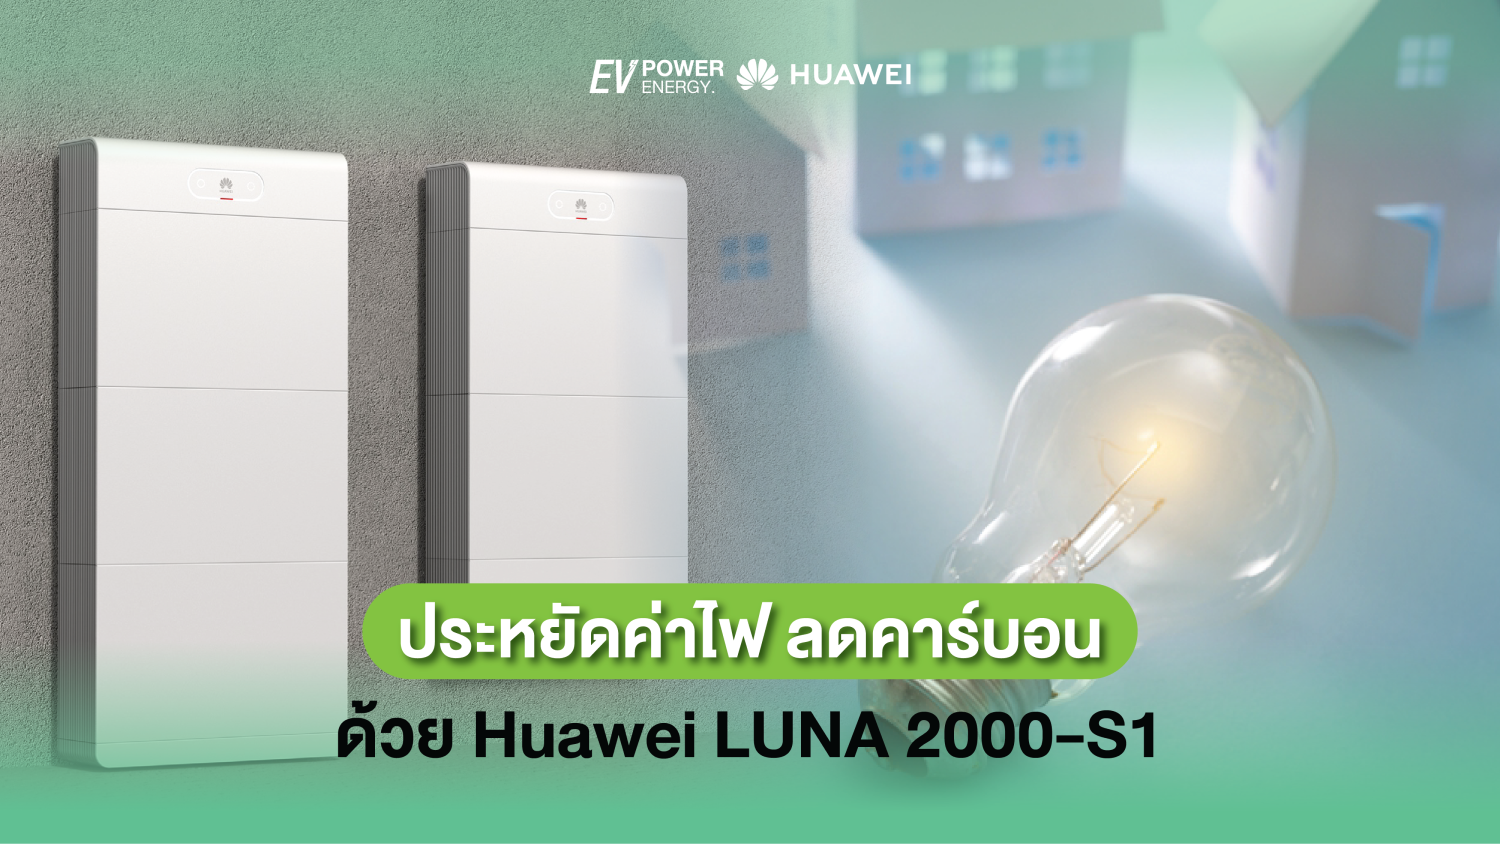 ประหยัดค่าไฟ ลดคาร์บอนด้วย Huawei LUNA 2000-S1 1